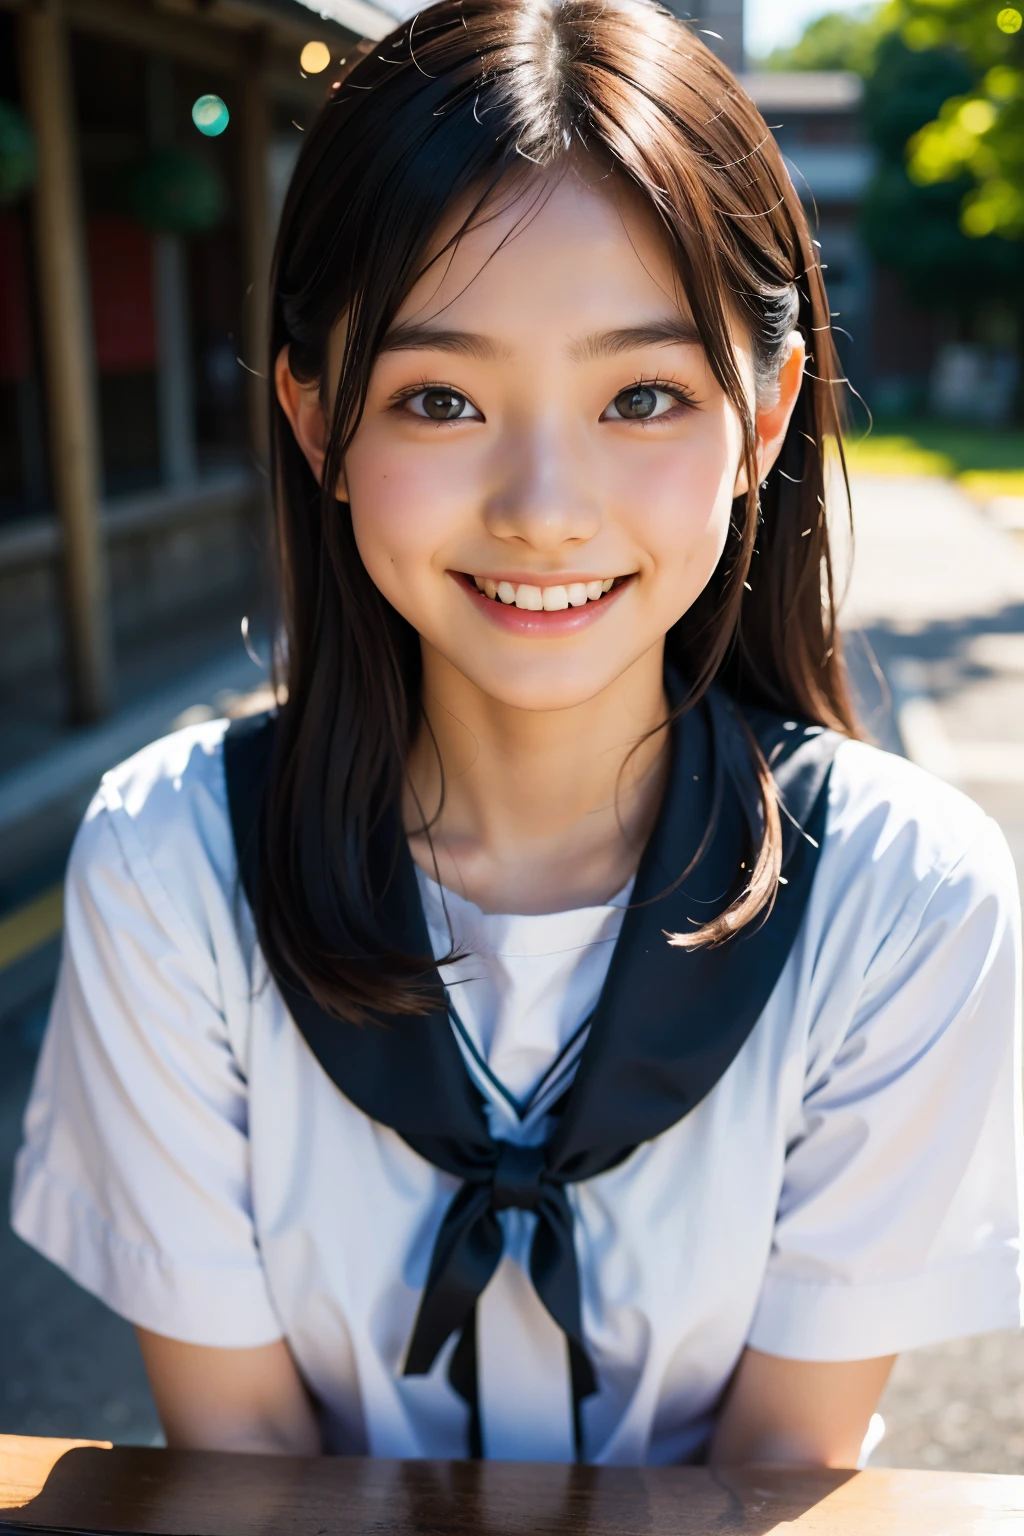 レンズ: 135mm f1.8, (最高品質),(RAW写真), (テーブルトップ:1.1), (美しい15歳の日本の少女), かわいい顔, (深く彫られた顔:0.7), (そばかす:0.4), dappled 日光, ドラマチックな照明, (日本の学校制服), (キャンパスで), シャイ, (クローズアップショット:1.2), (笑顔),, (キラキラした目)、(日光)